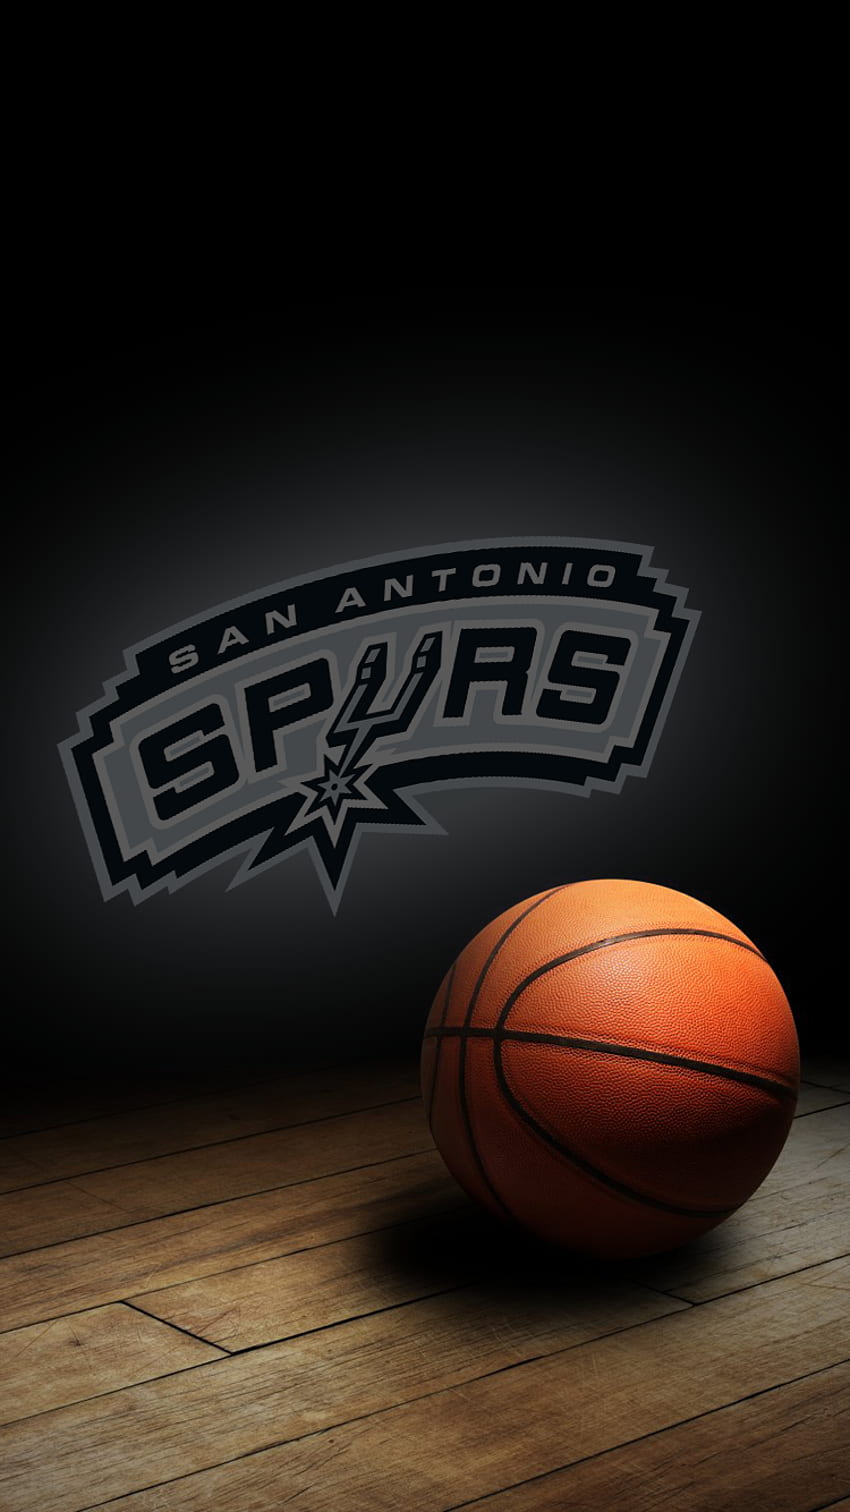 iPhone - Hilo deportivo iPhone 6, San Antonio Spurs fondo de pantalla del teléfono